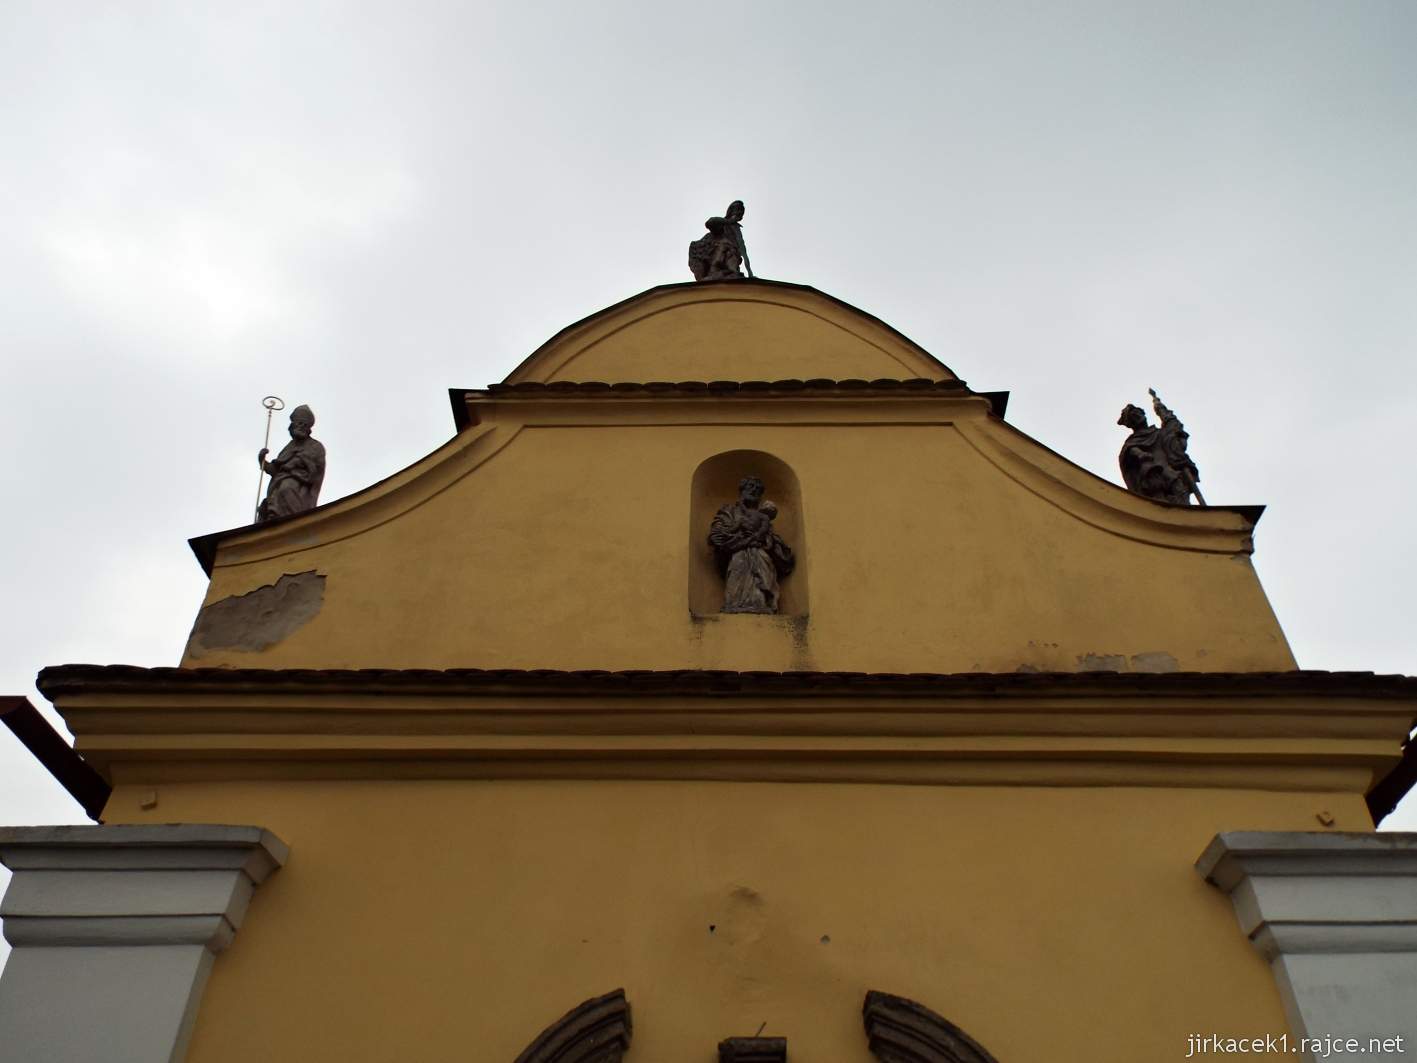 Kyjov - kaple sv. Rocha - dole socha sv. Josefa, na vrcholové římse sochy svatého Rocha, Floriána a archanděla Michaela